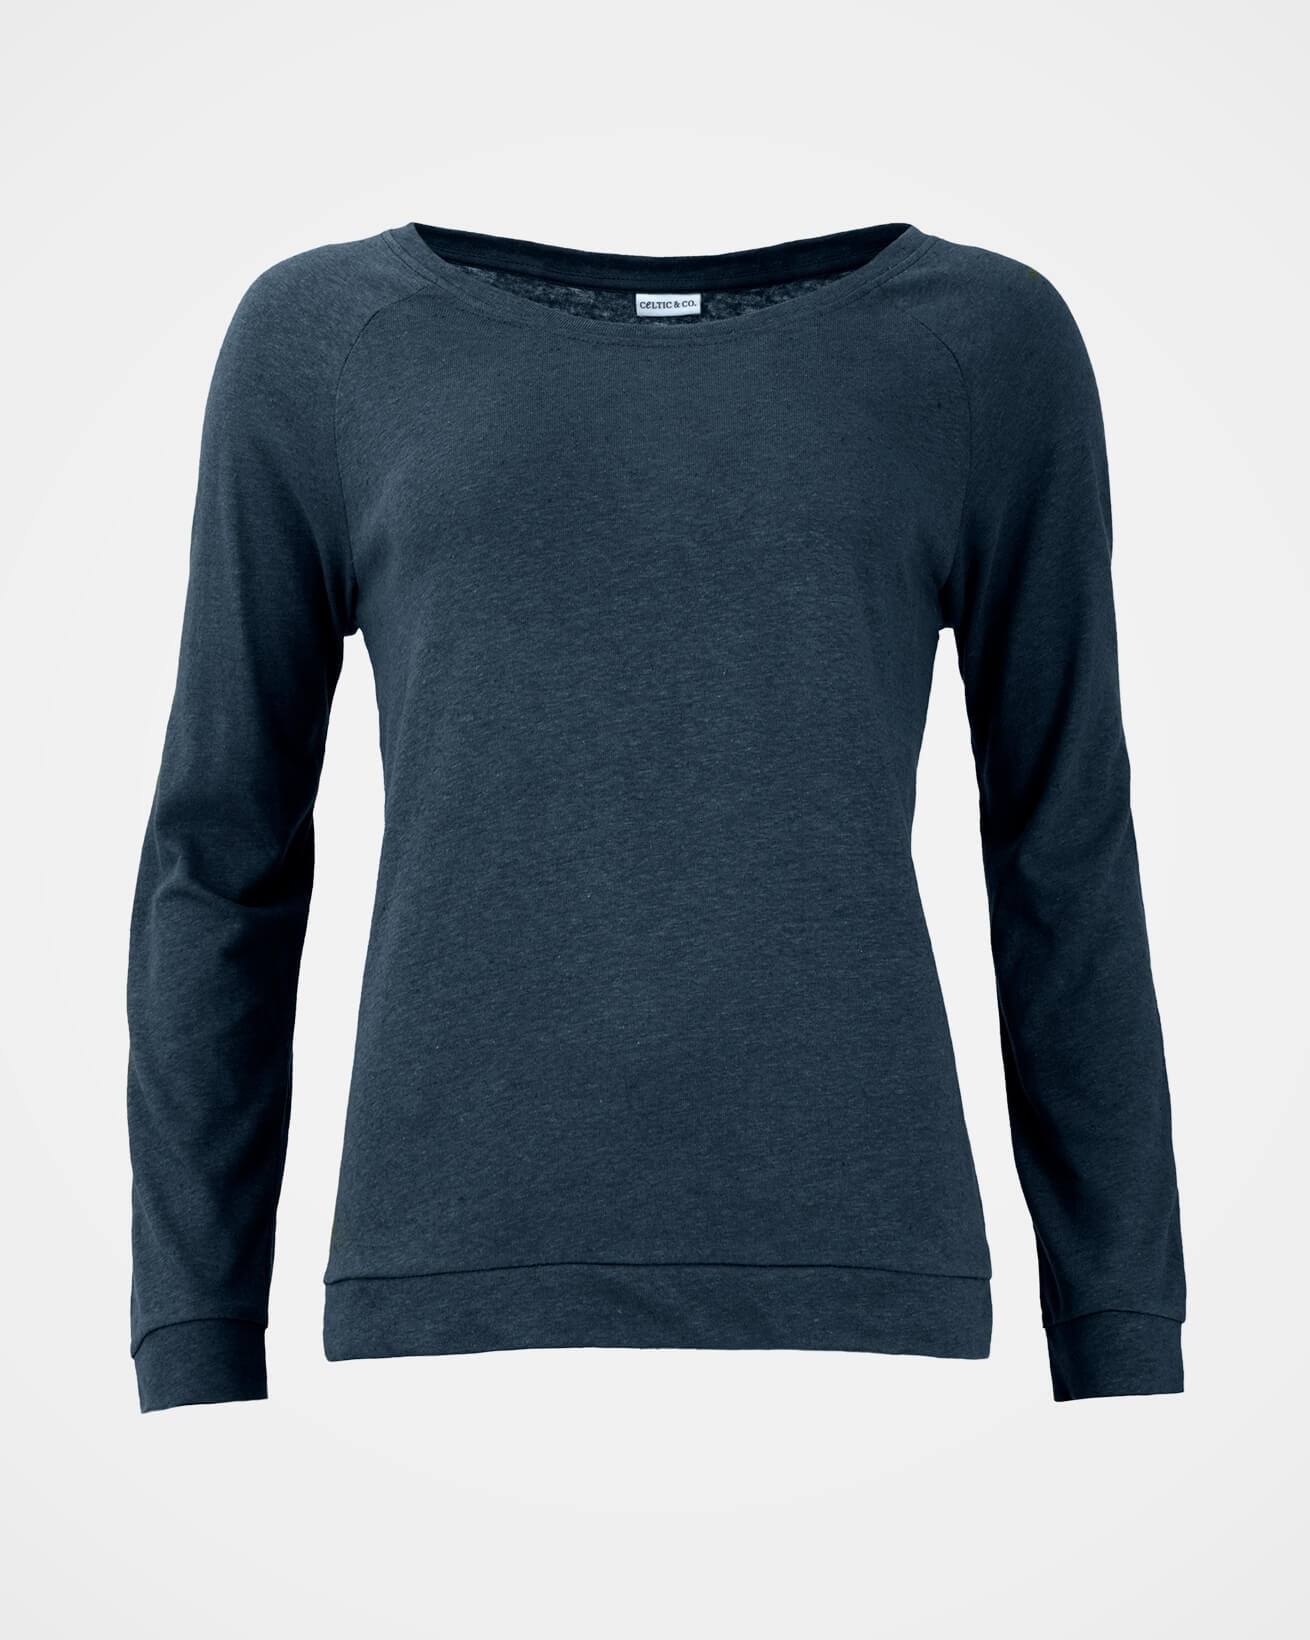 7584_linen-cotton-sweatshirt_navy_front_web.jpg